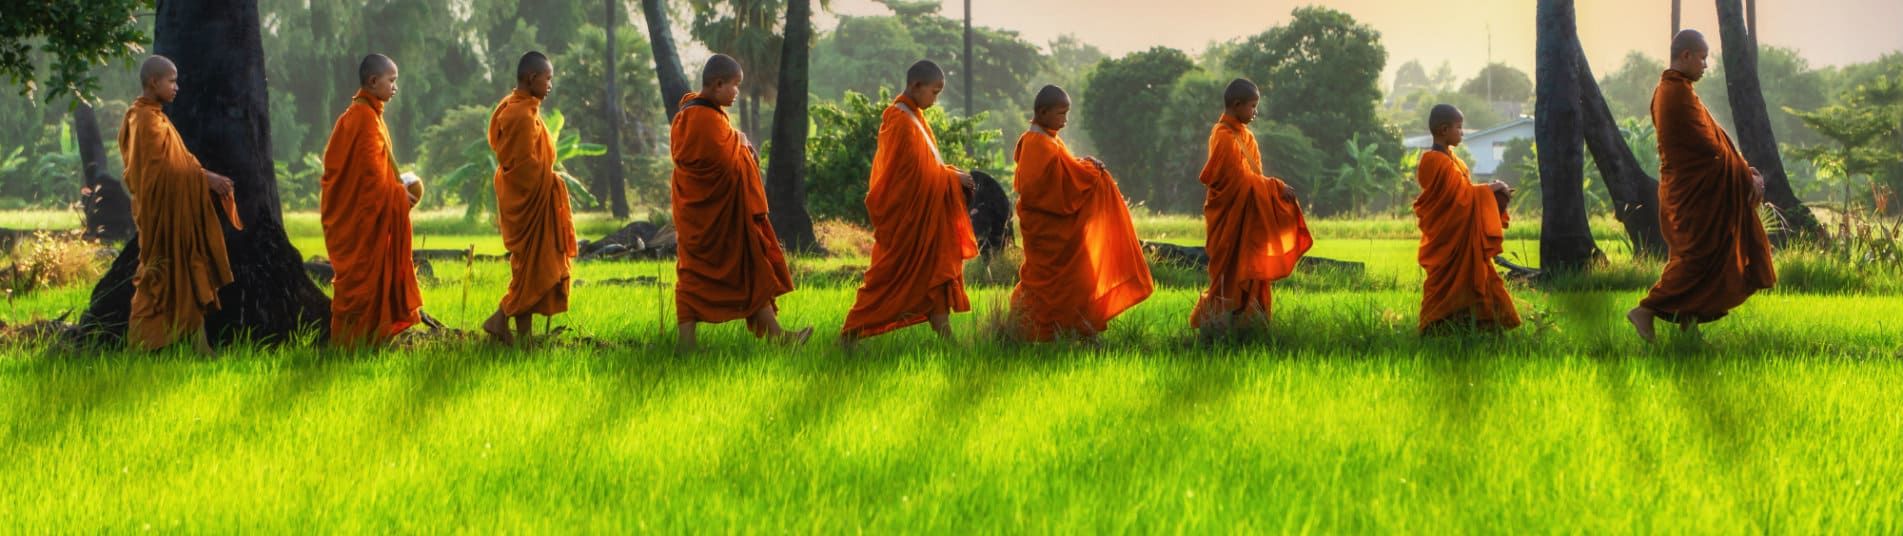 Moines bouddhistes en Thaïlande